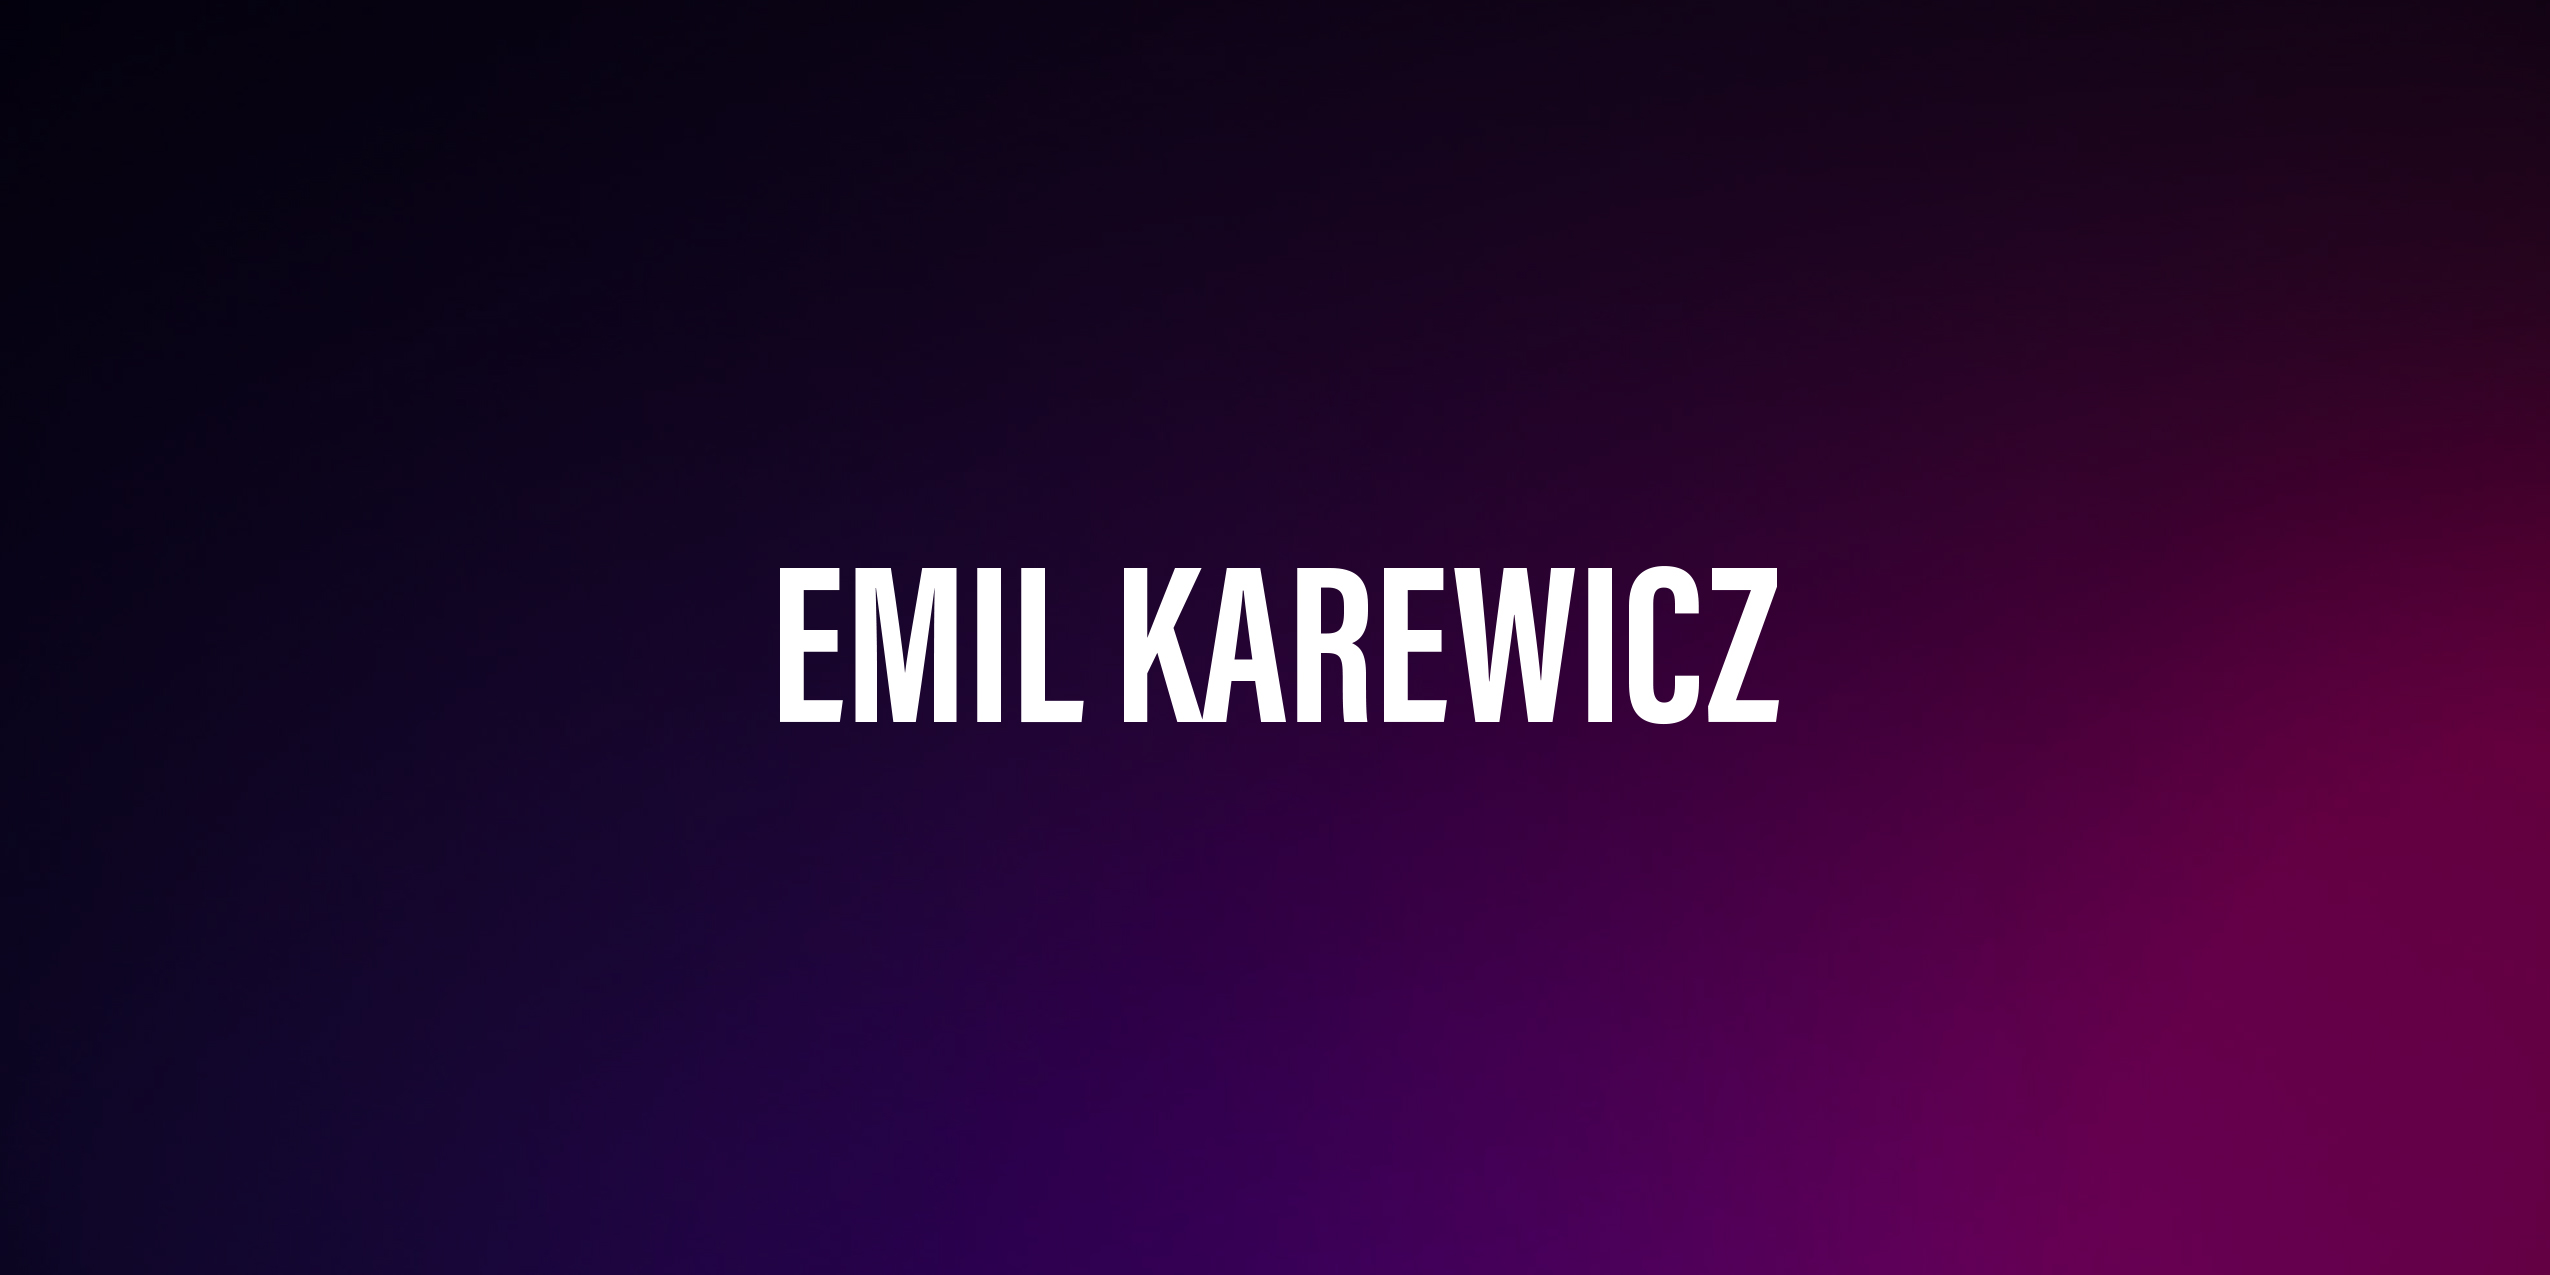 Emil Karewicz – życiorys i filmografia